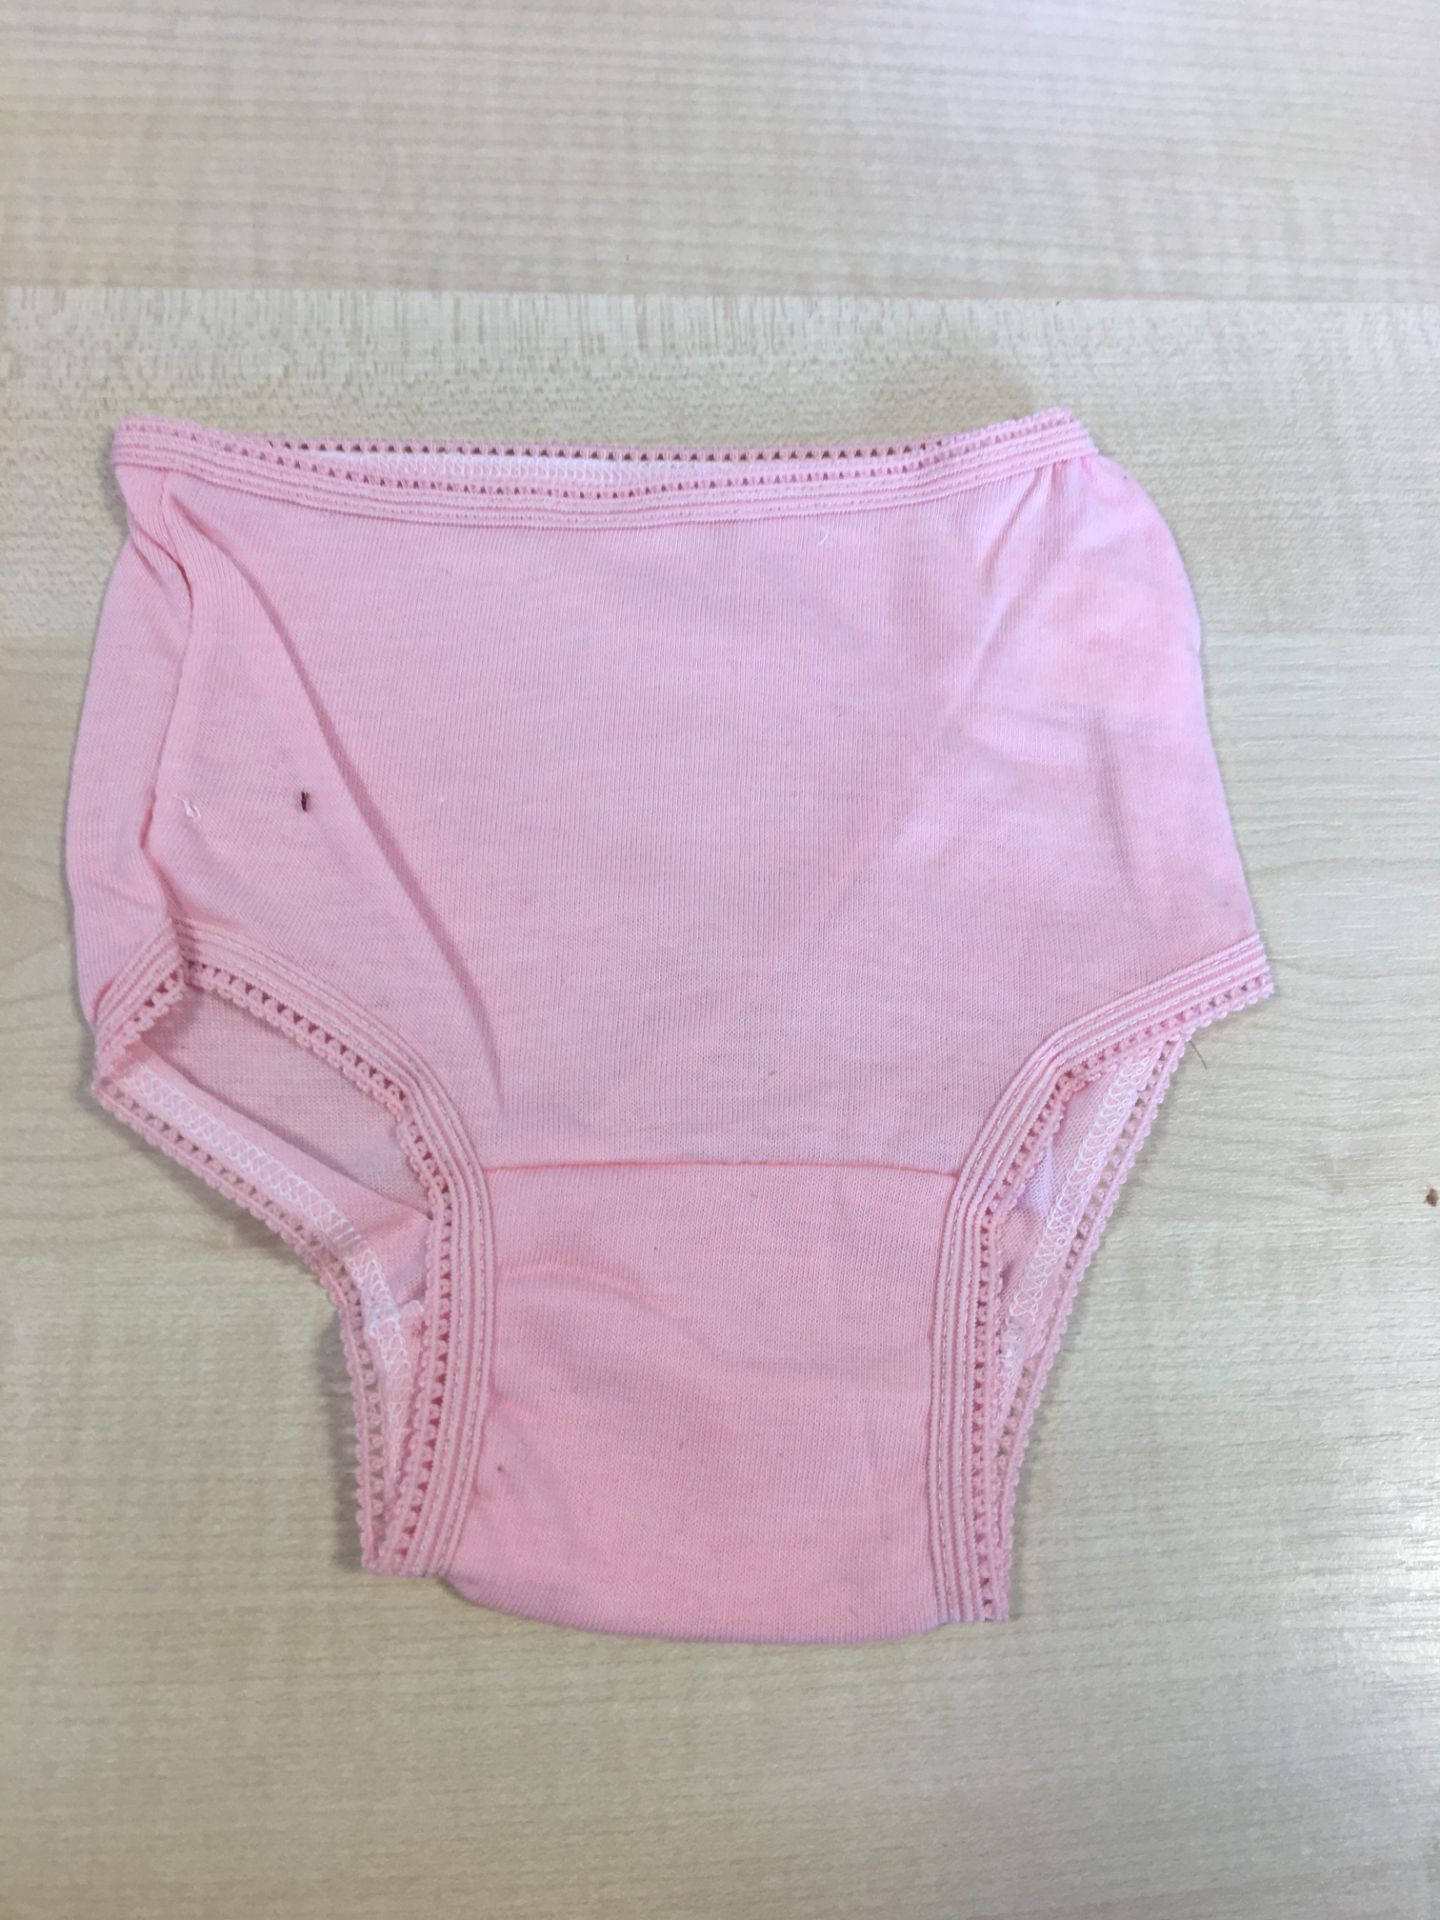 36 Pairs of Girls Childs Underwear